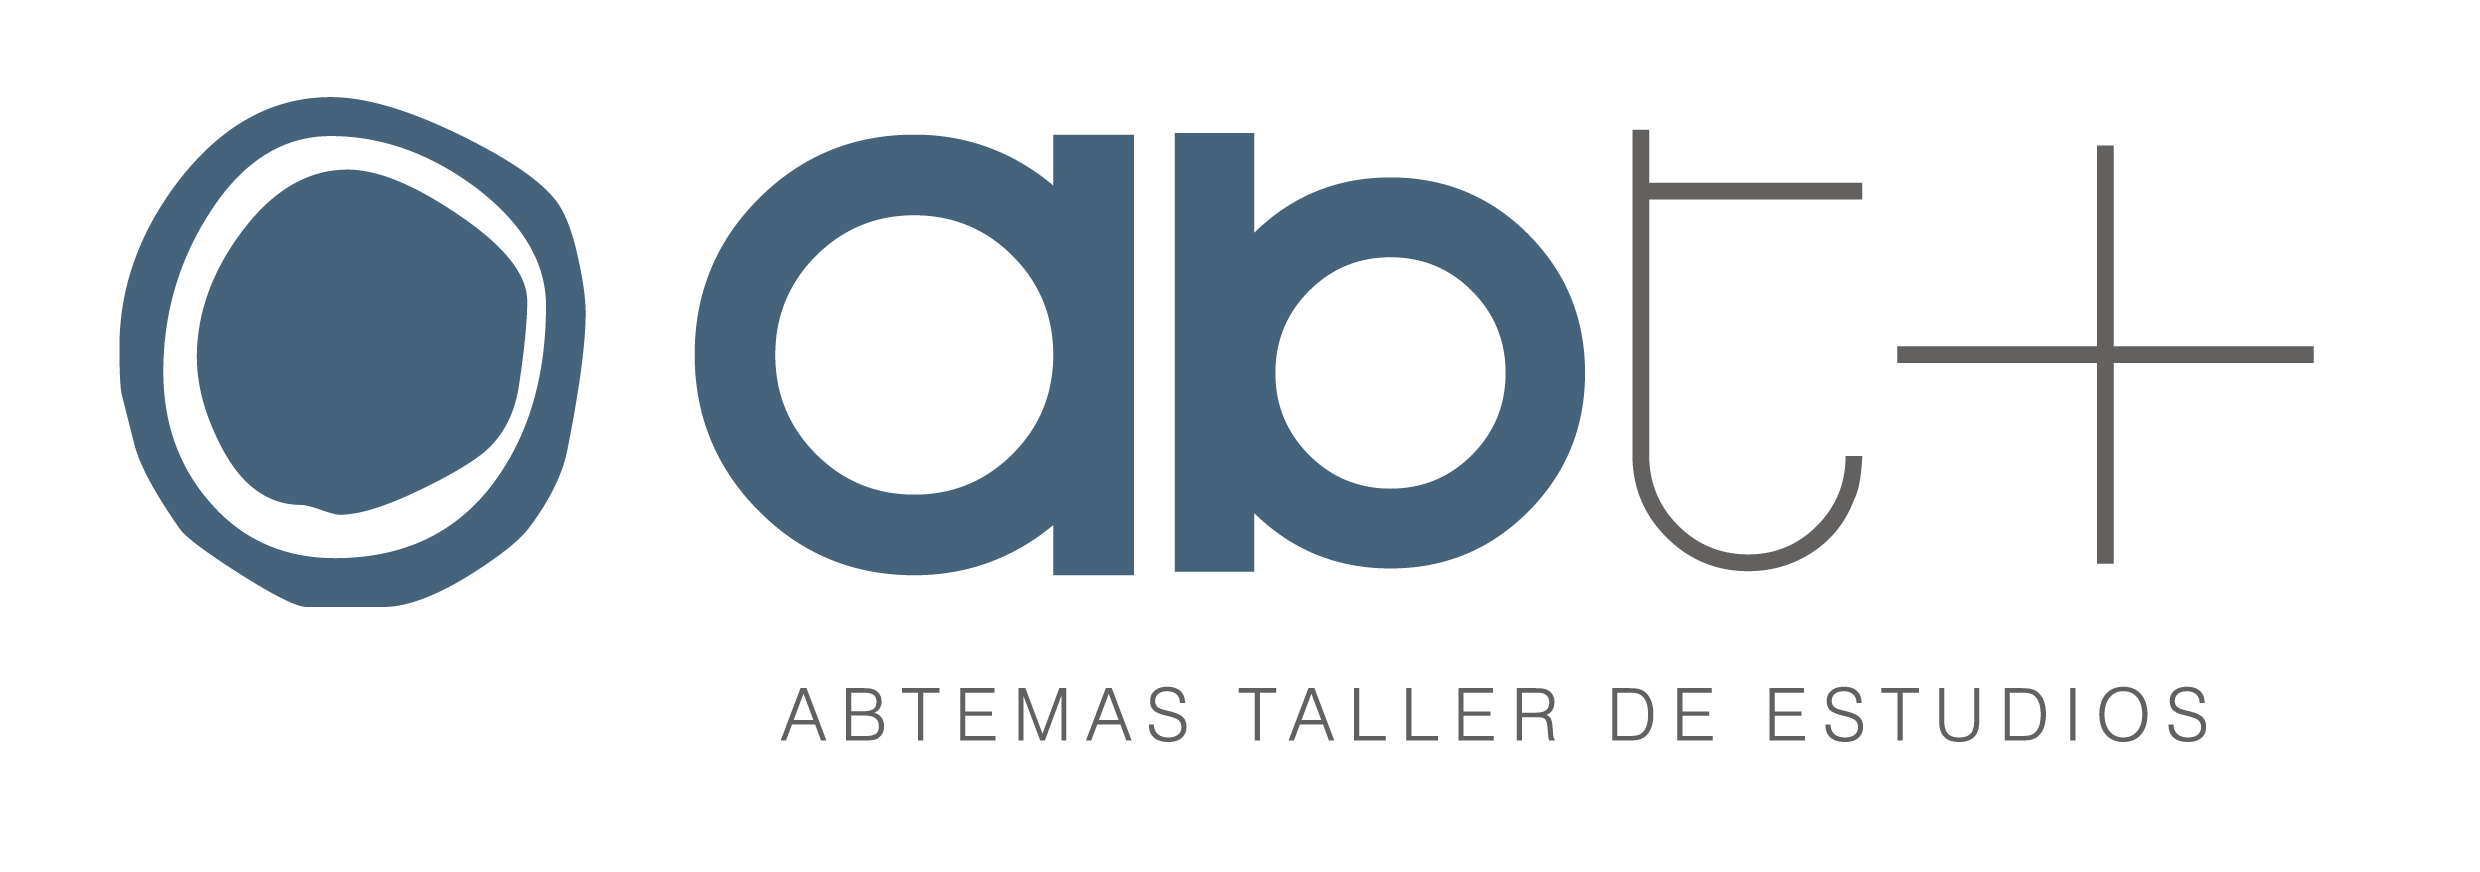 Abtemas logotipo